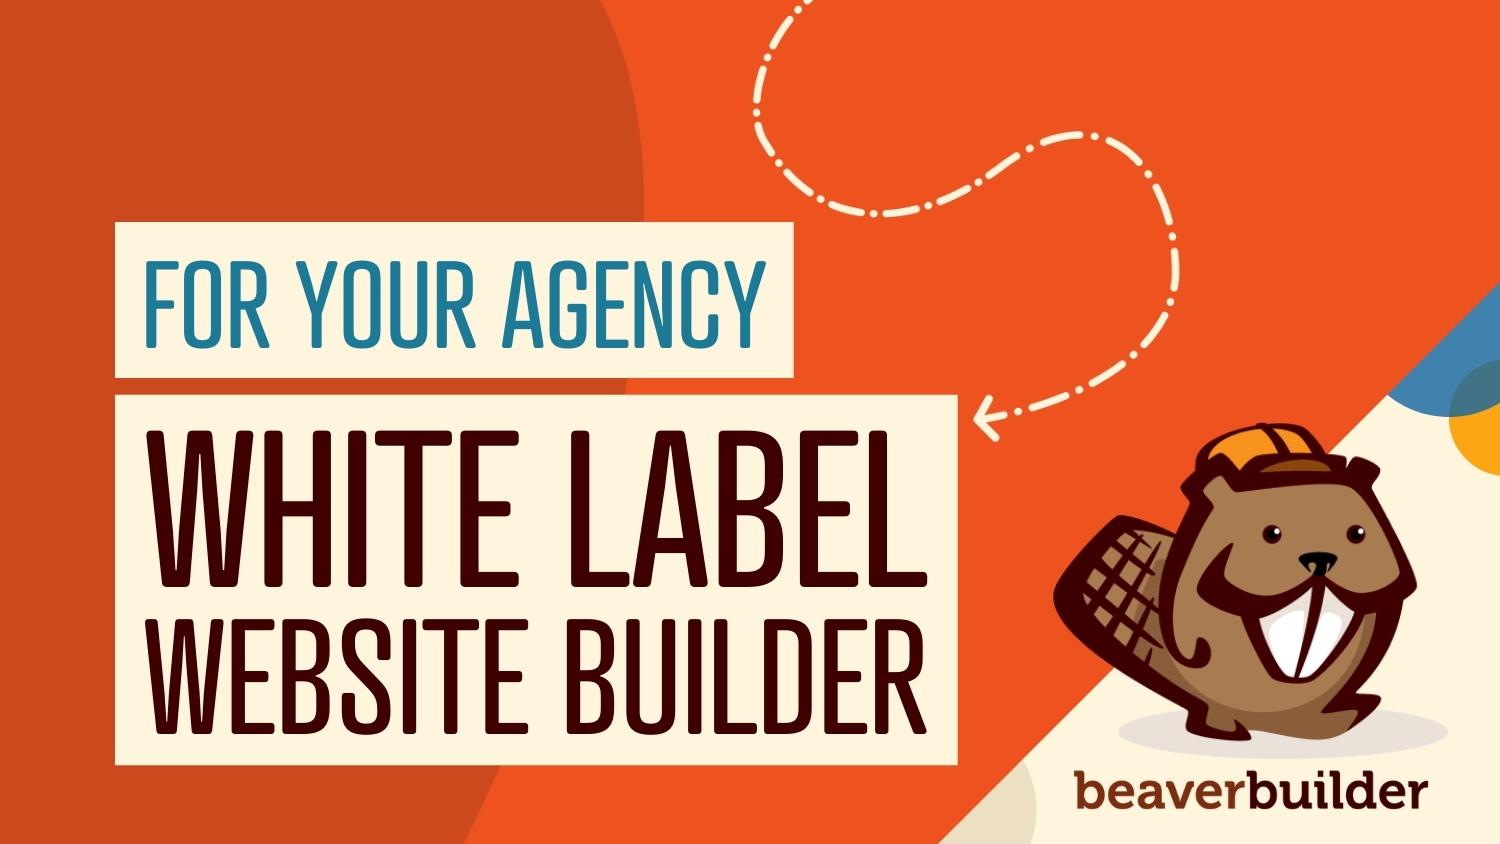 White label website builder for your agency | Beaver Builder blog